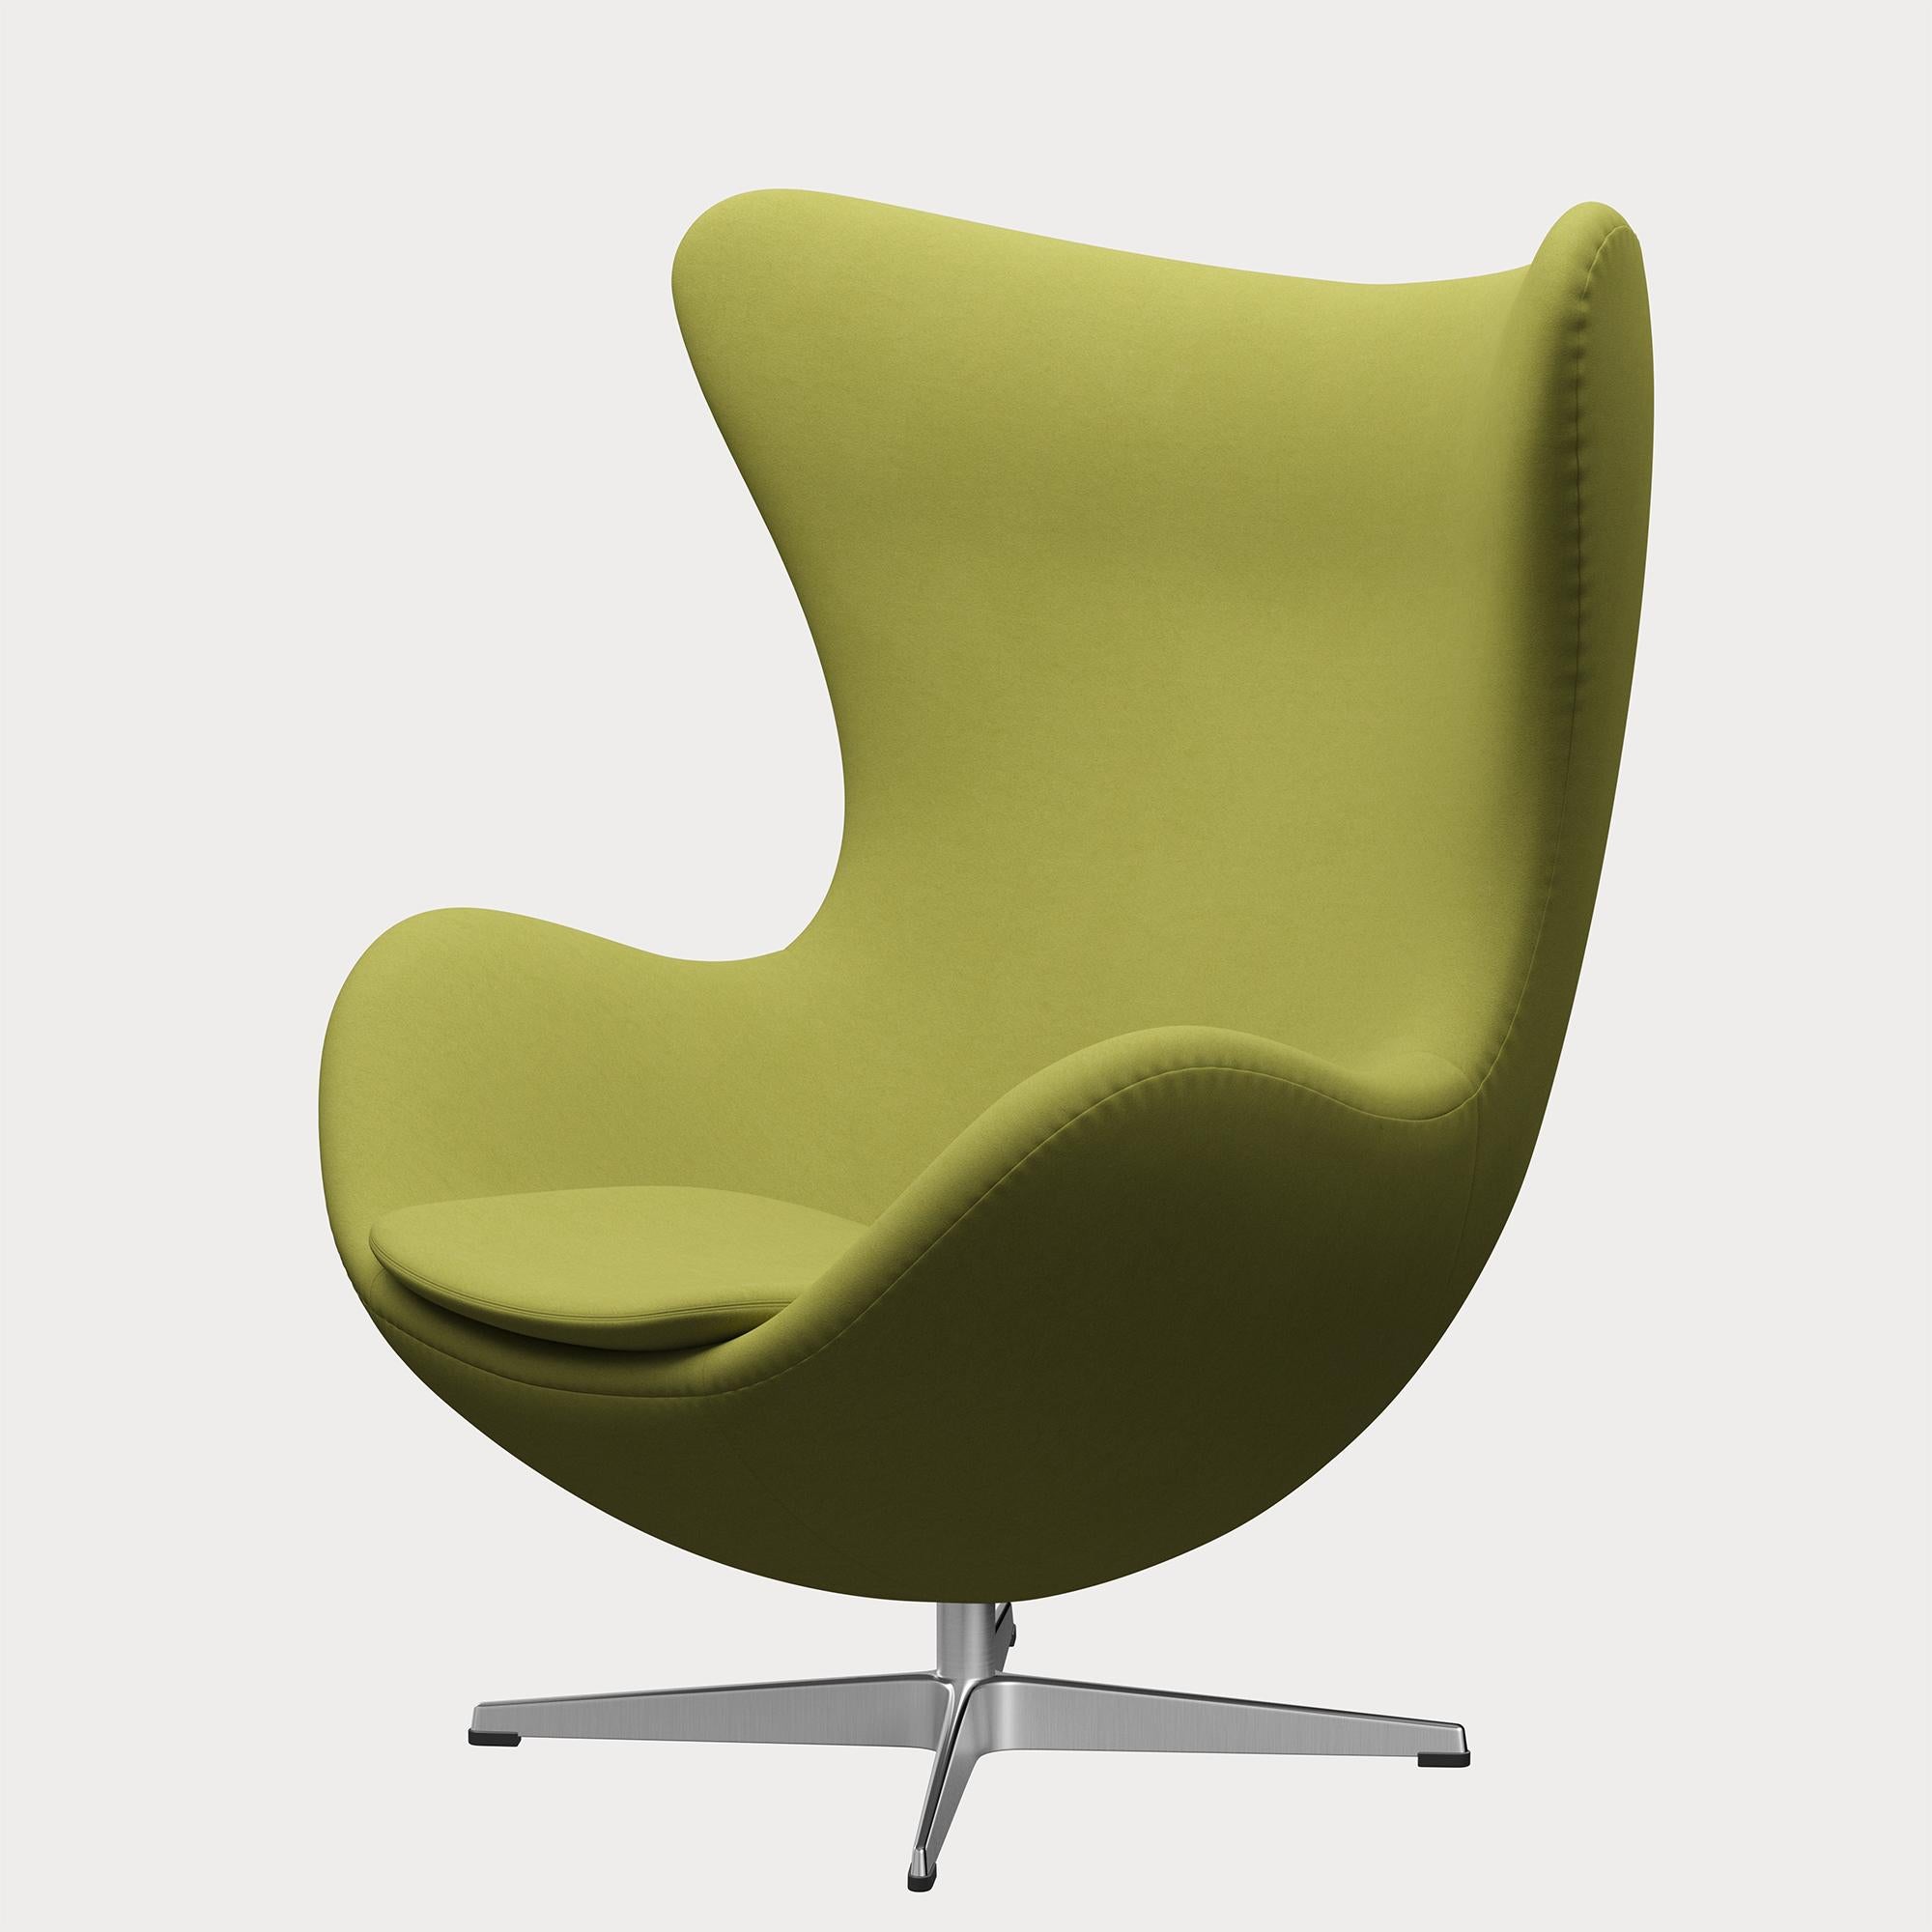 Arne Jacobsen 'Egg' Chair for Fritz Hansen in Fabric Upholstery (Cat. 3) For Sale 1